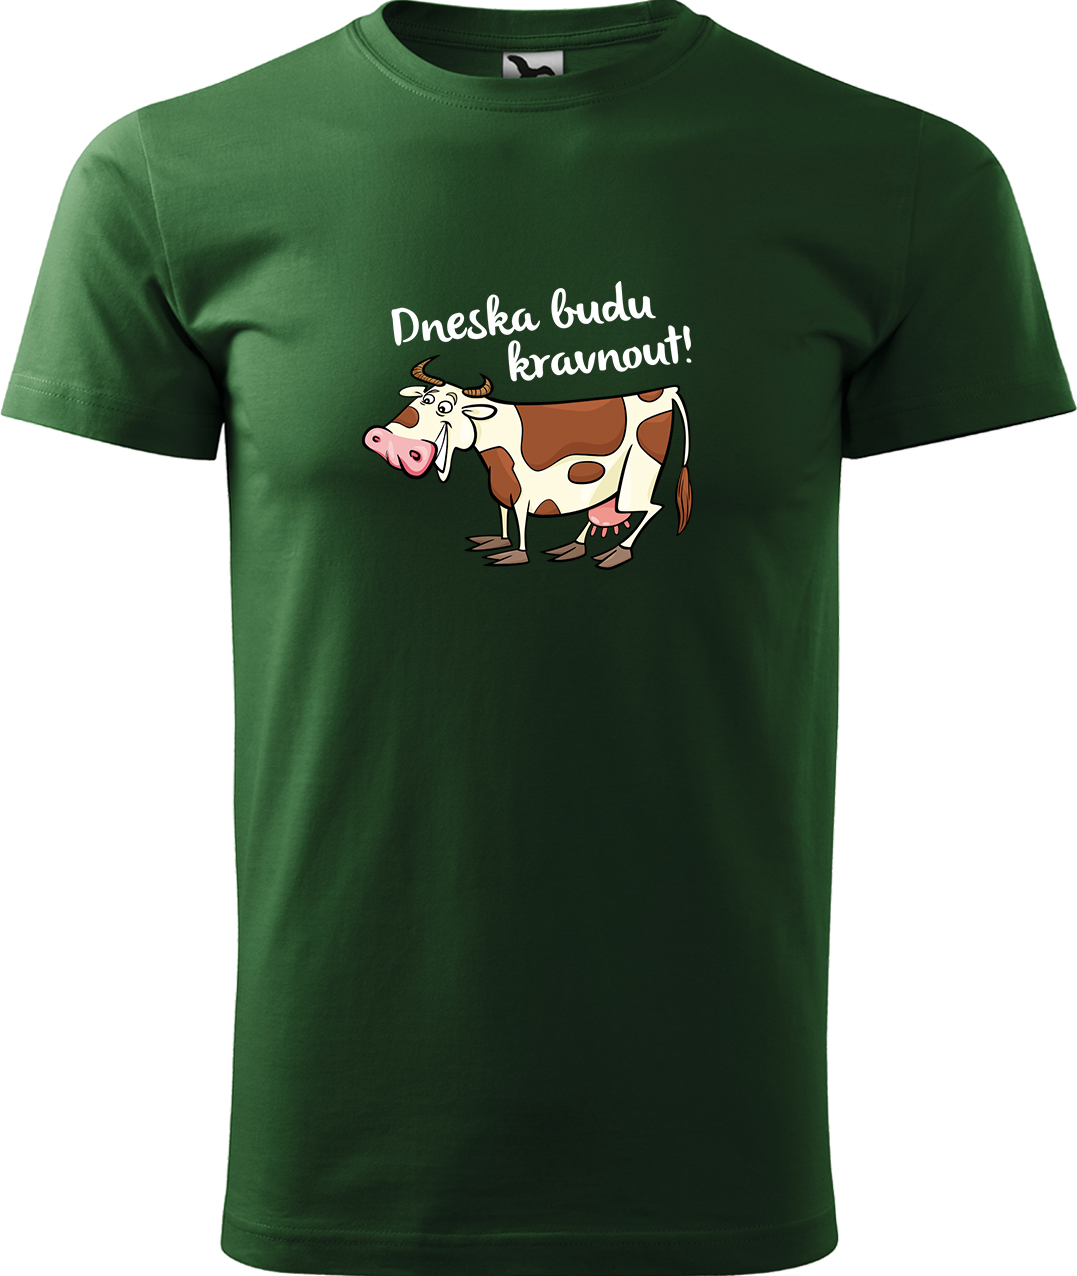 Pánské tričko s krávou - Dneska budu kravnout! Velikost: 3XL, Barva: Lahvově zelená (06), Střih: pánský